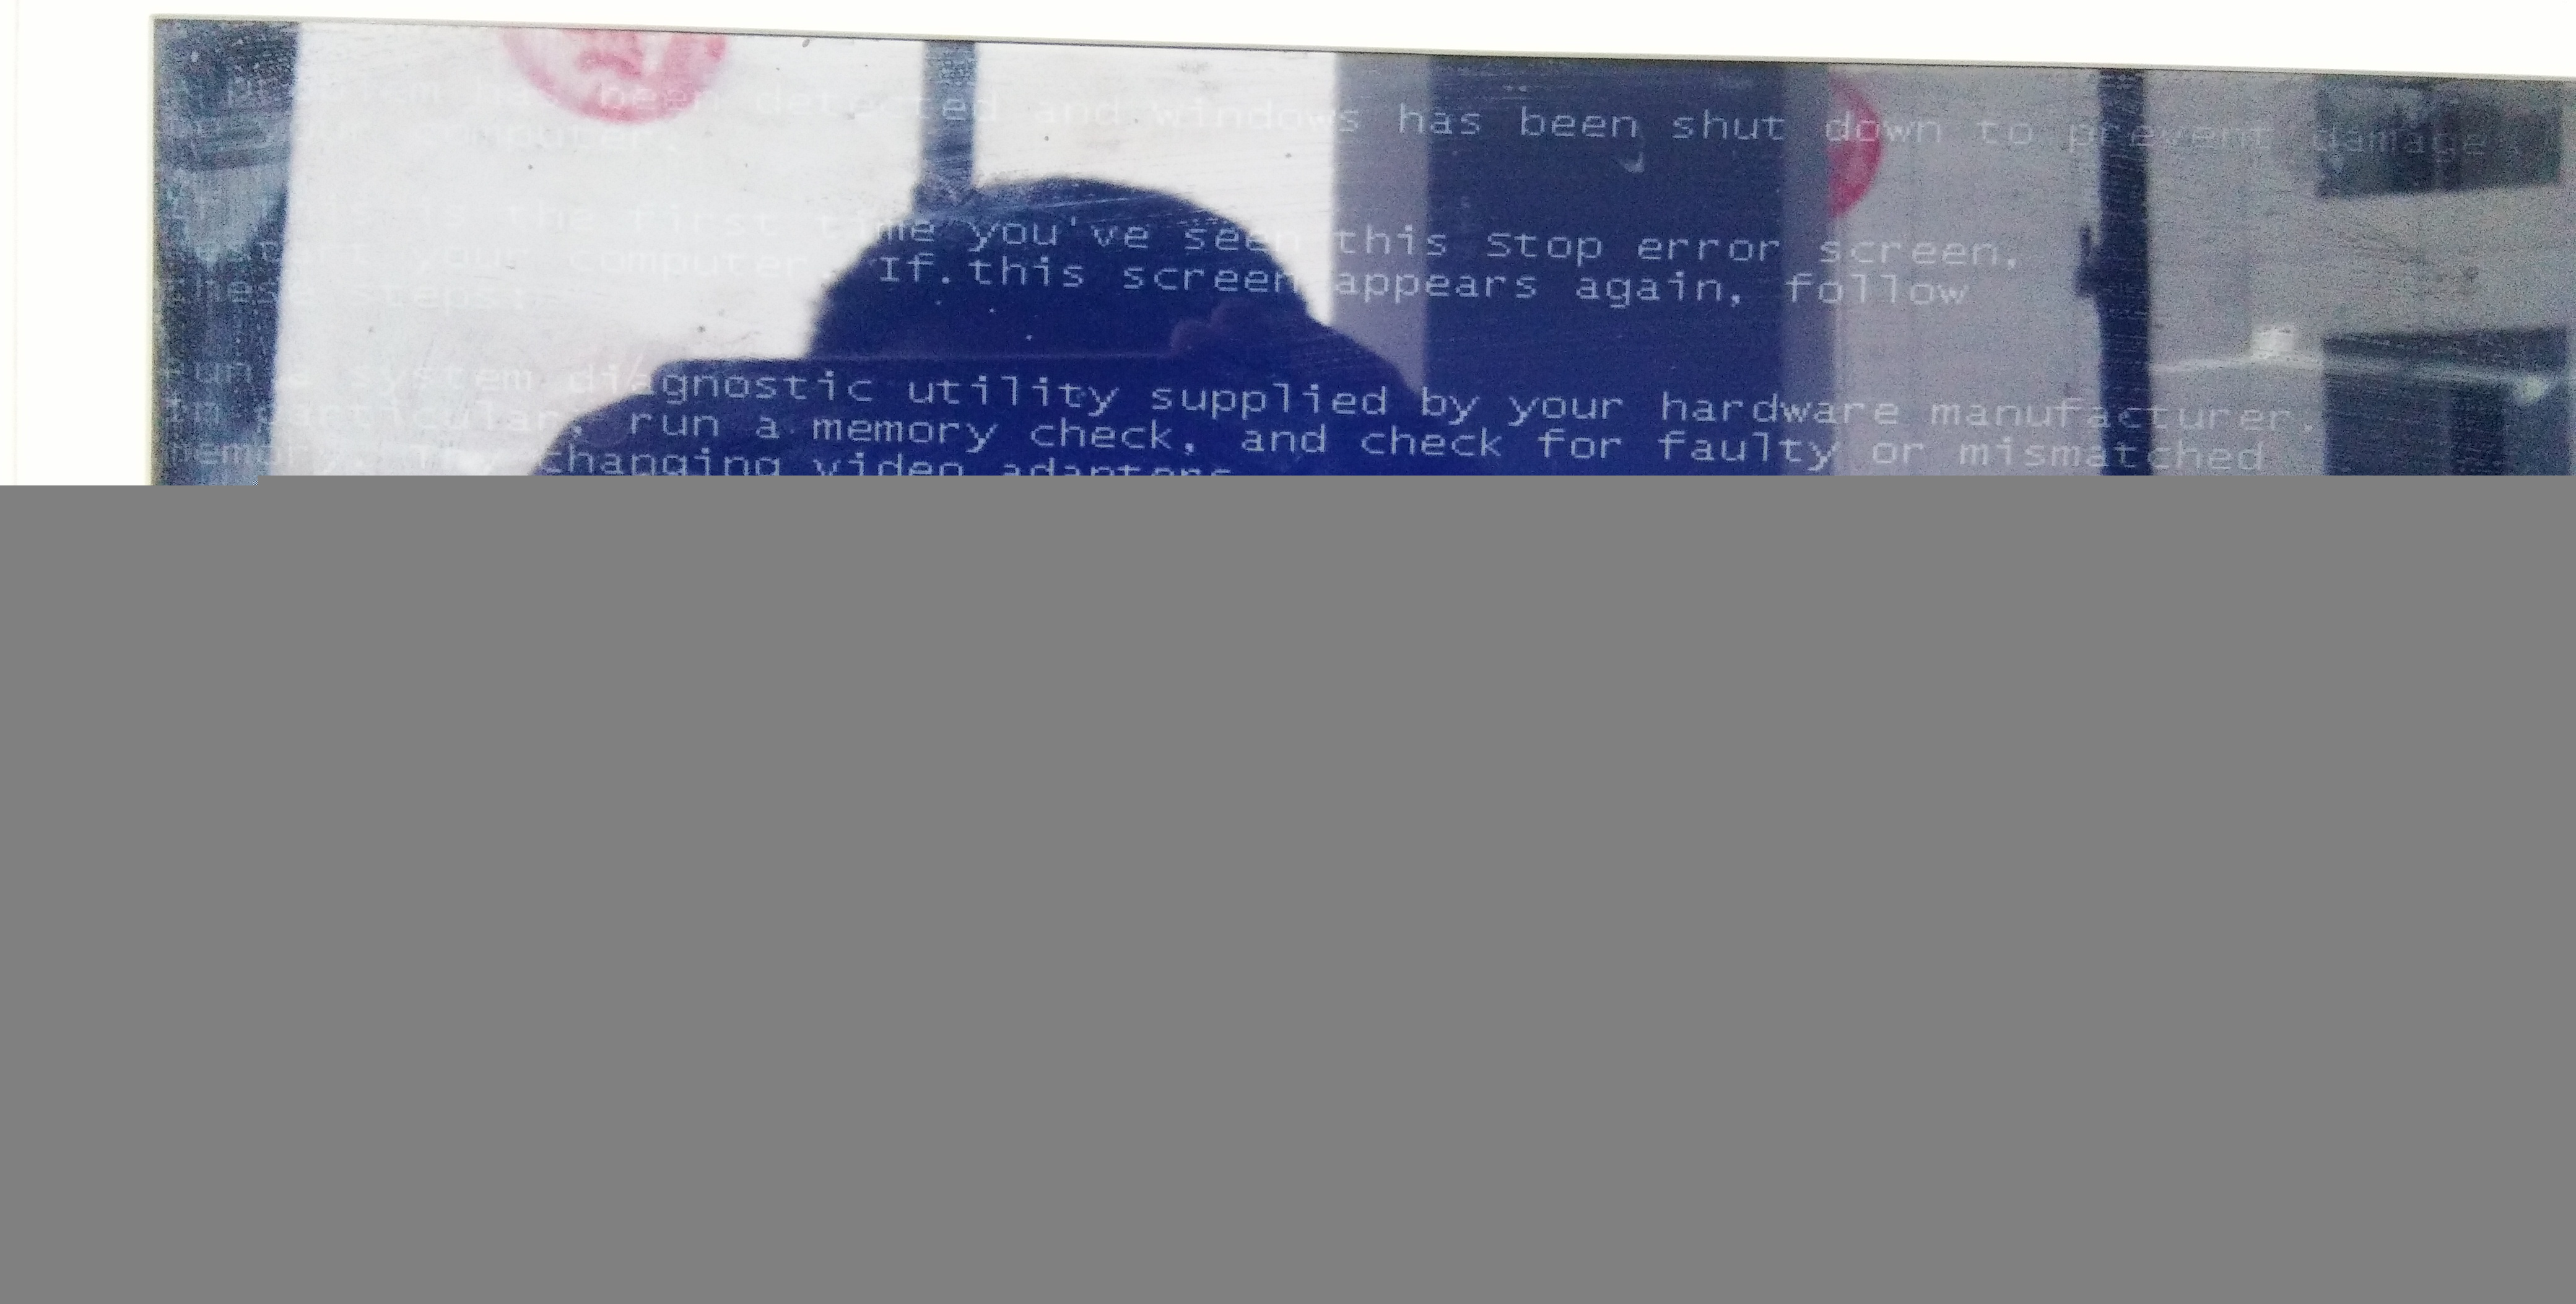 [系统教程]Windows系统蓝屏代码0x0000007F解决办法,dxgkrnl.sys驱动蓝屏解决教程